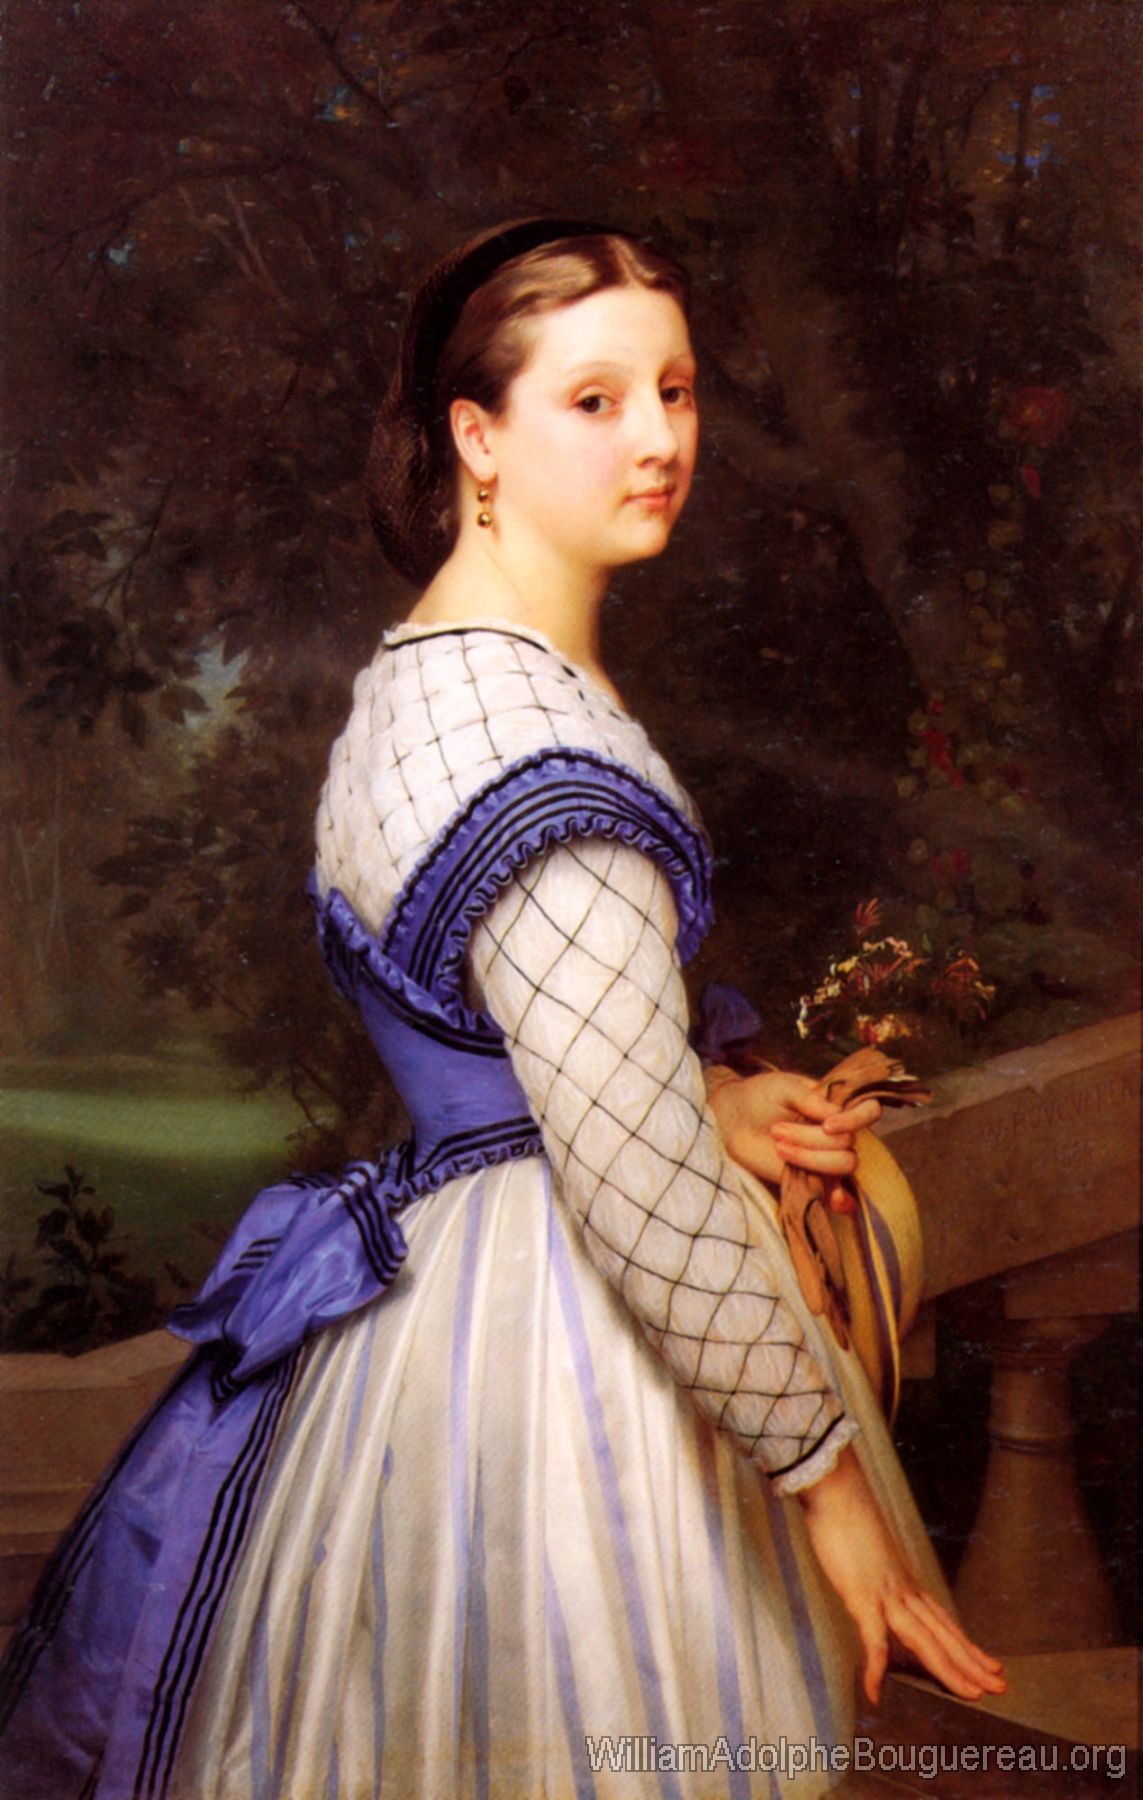 La Comtesse de Montholon, The Countess de Montholon